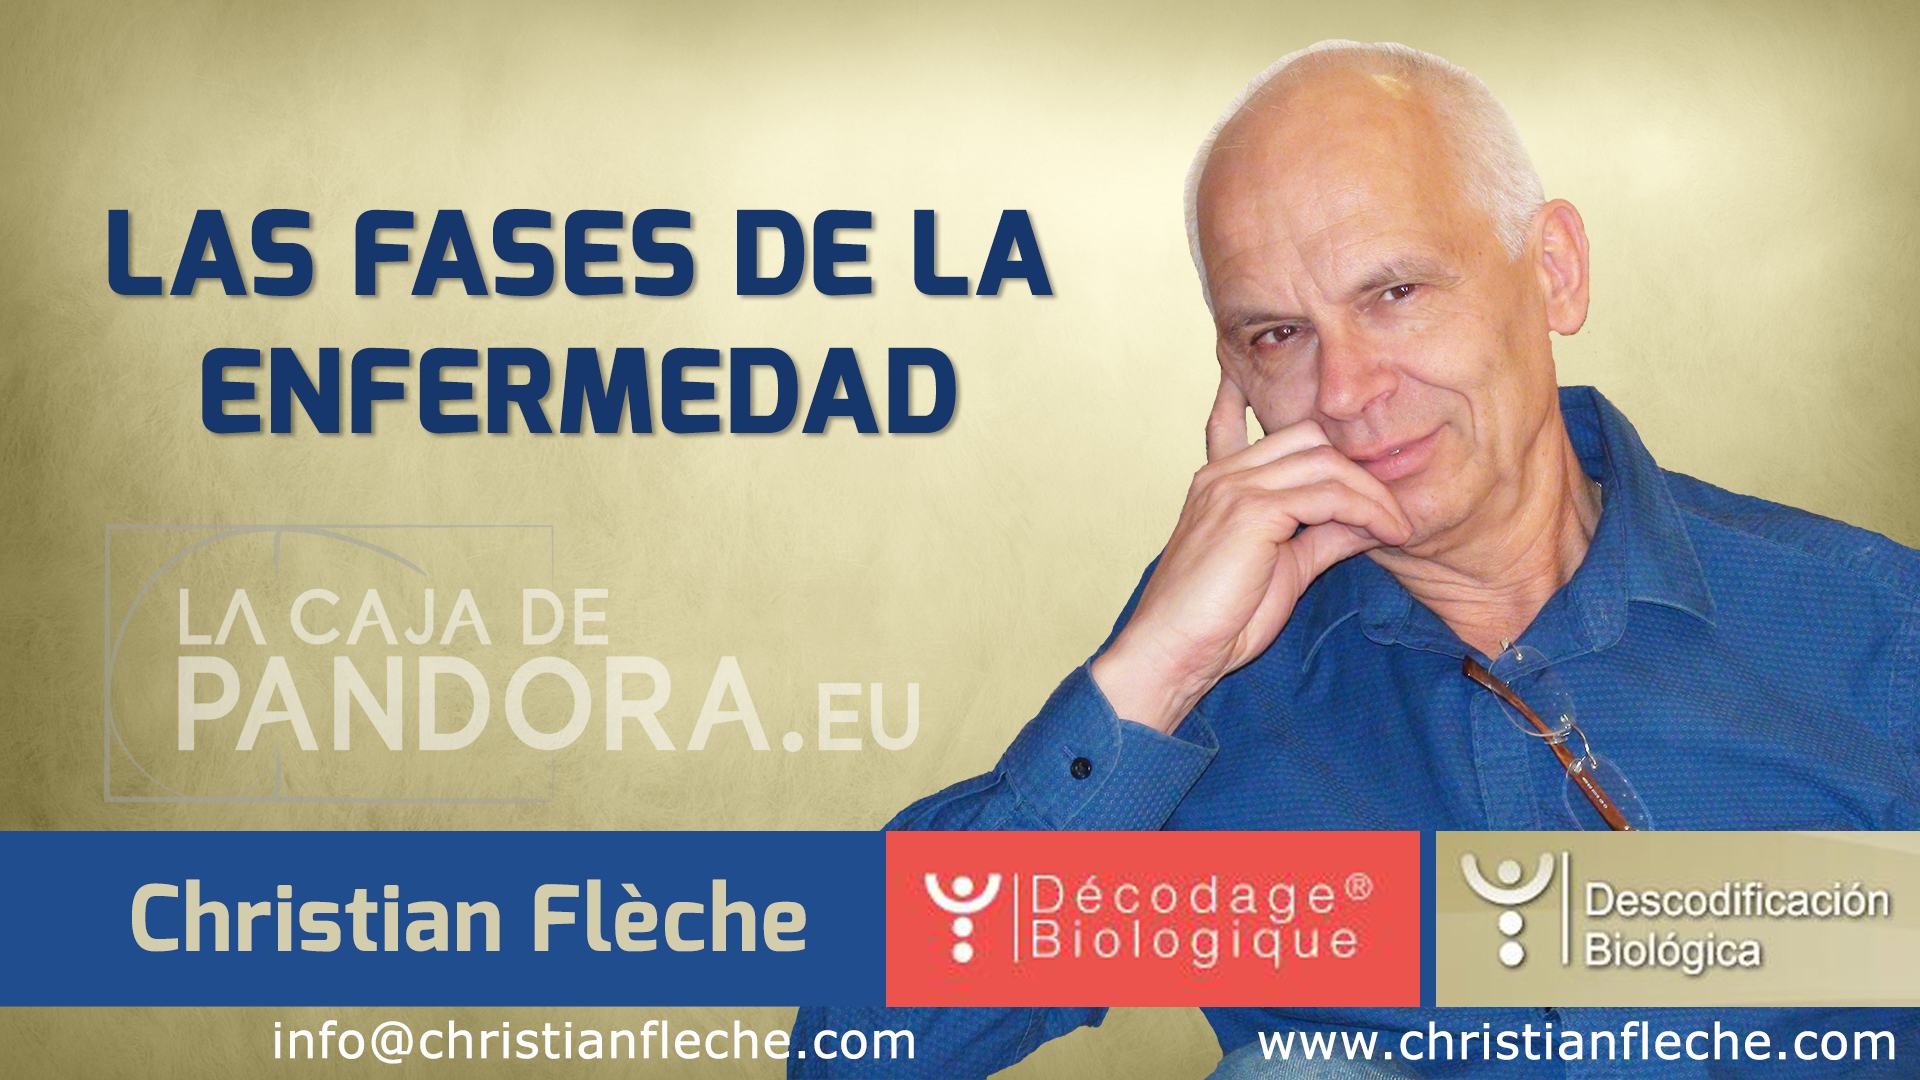 Christian Fleche El Origen Emocional De Las Enfermedades Pdf